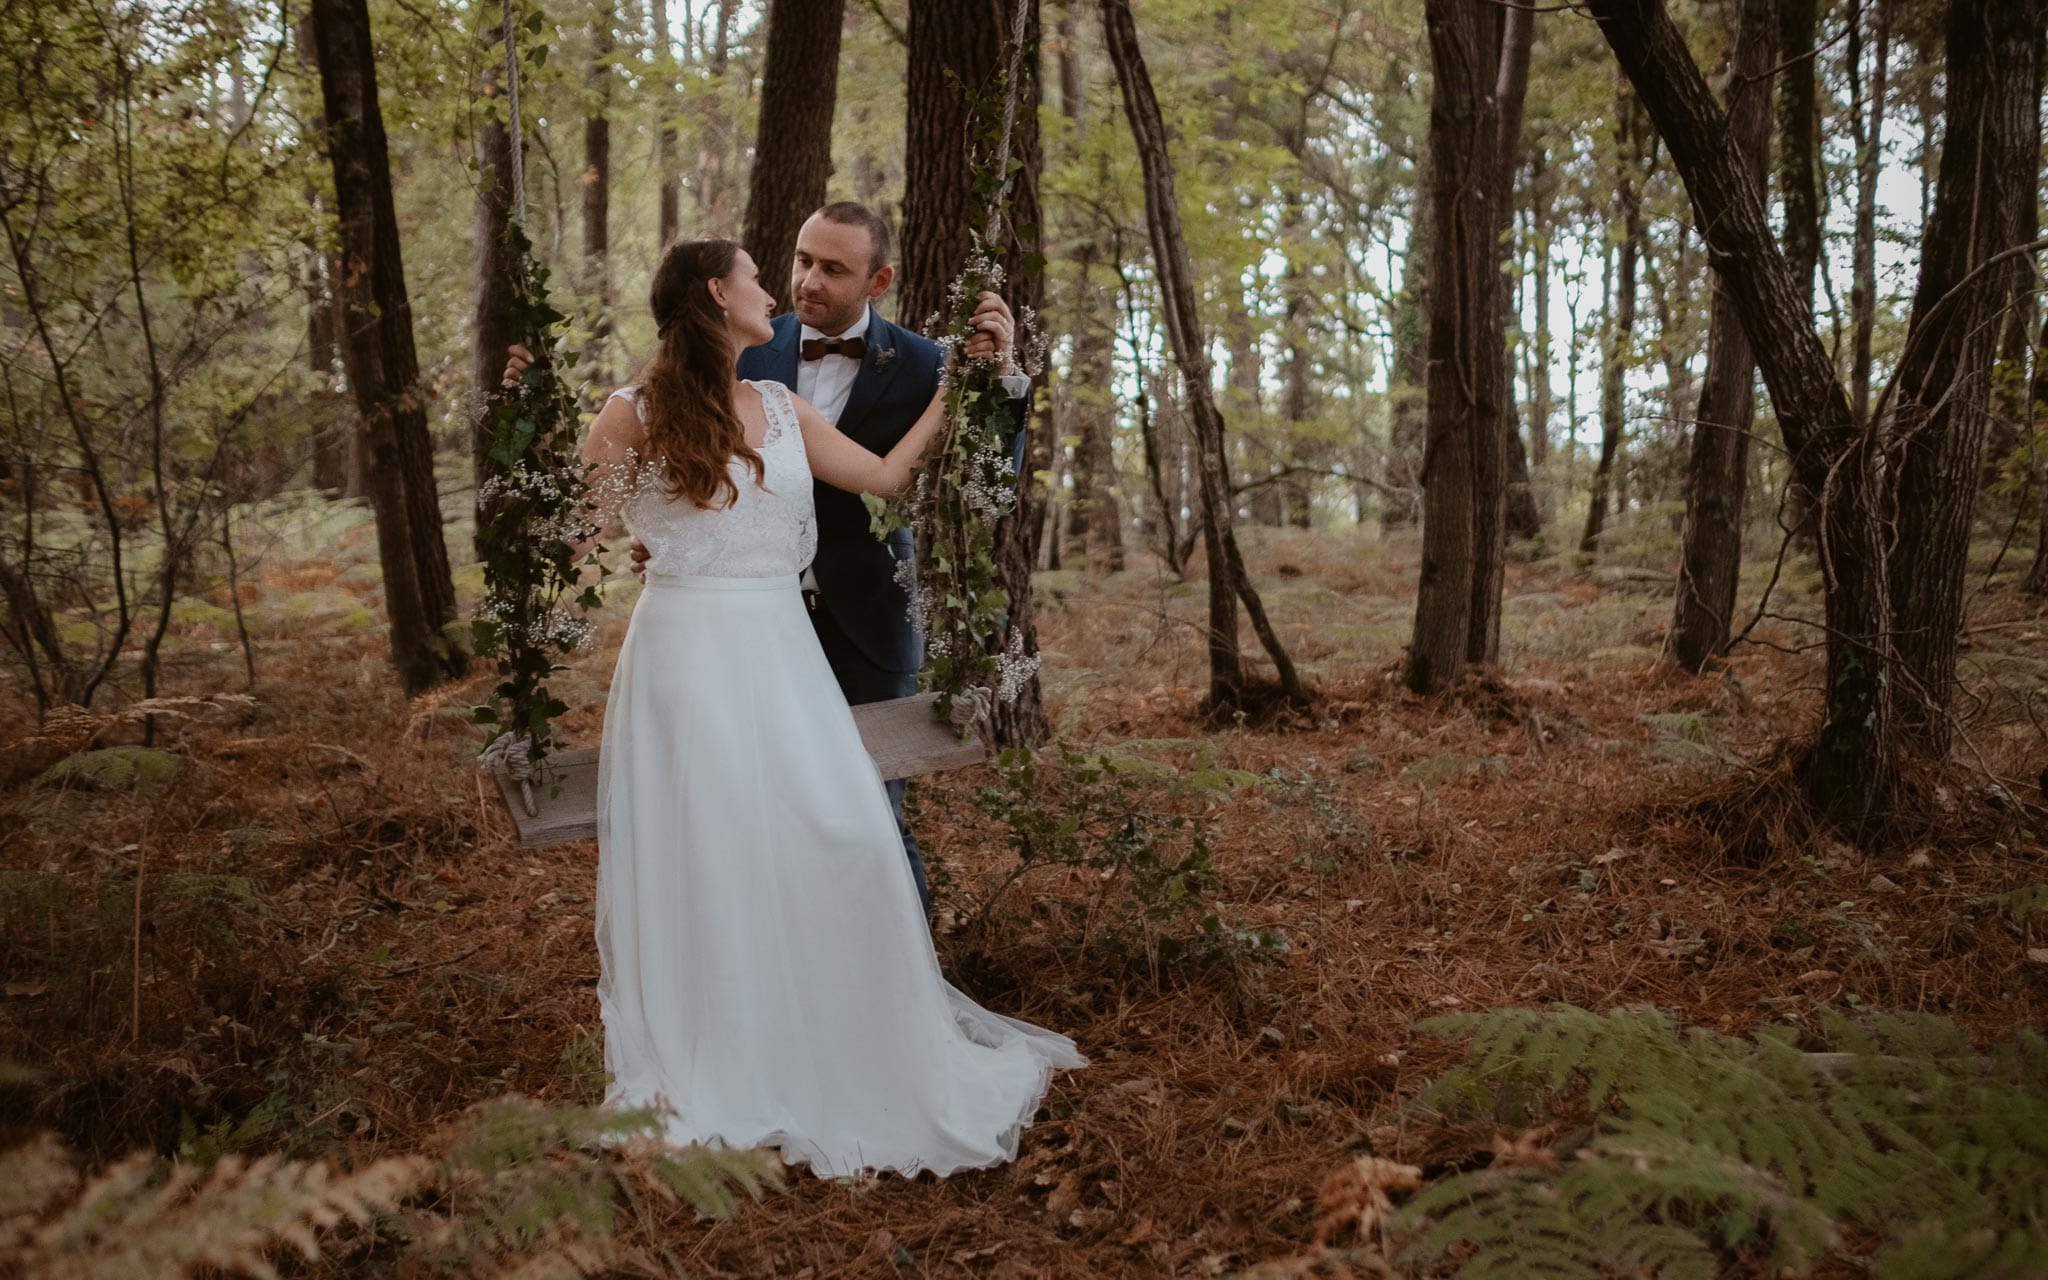 Séance couple après mariage naturelle et romantique dans une forêt en Vendée par Geoffrey Arnoldy photographe